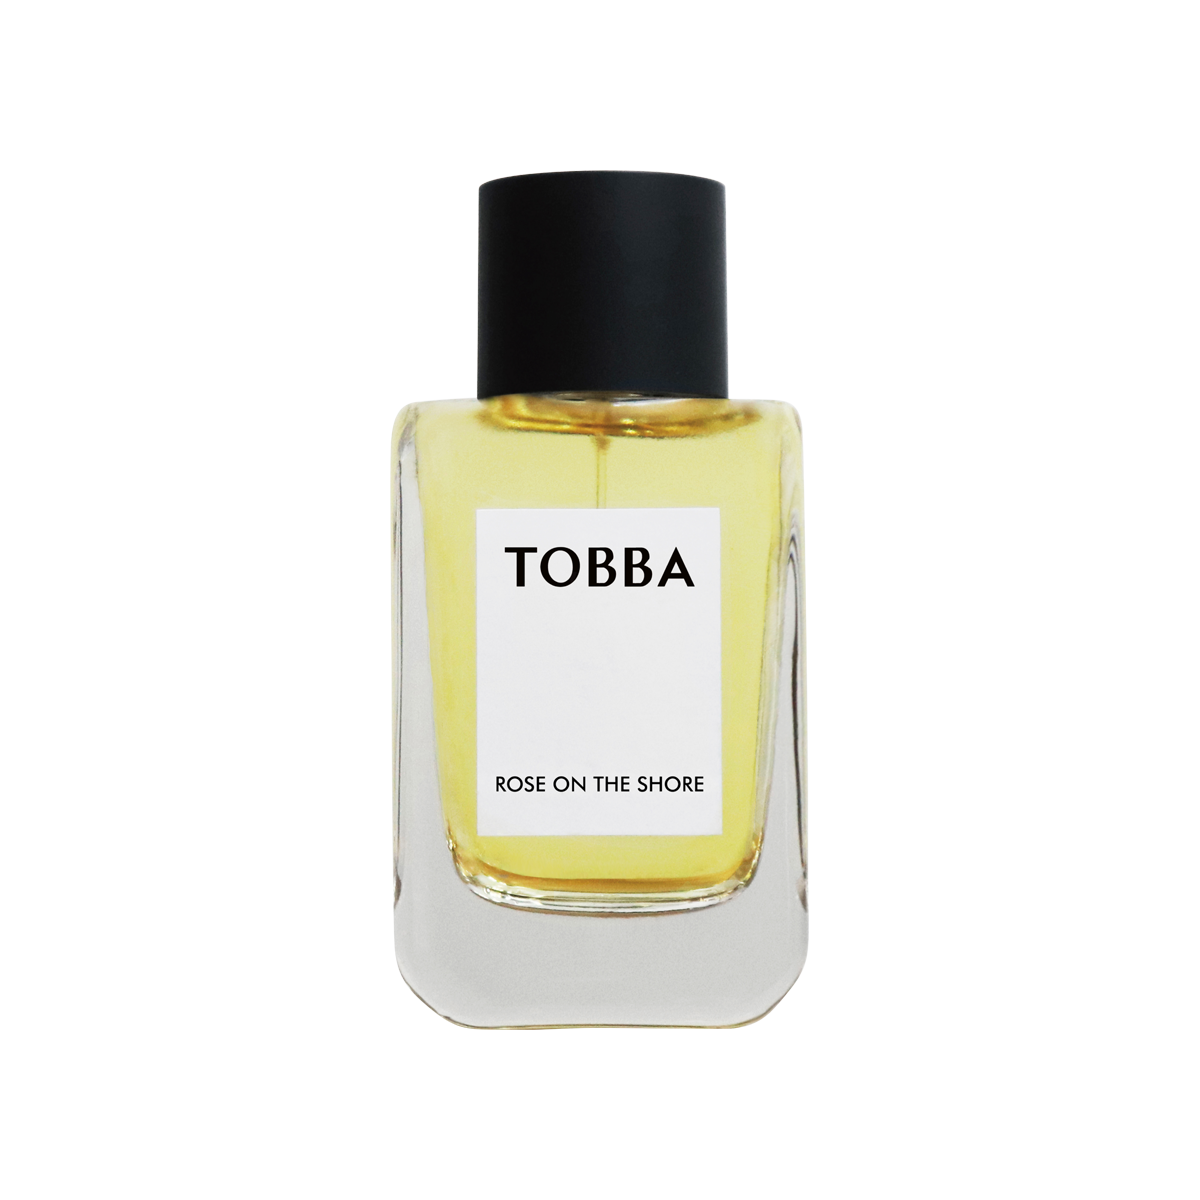 TOBBA - Rose on the Shore Eau de Parfum